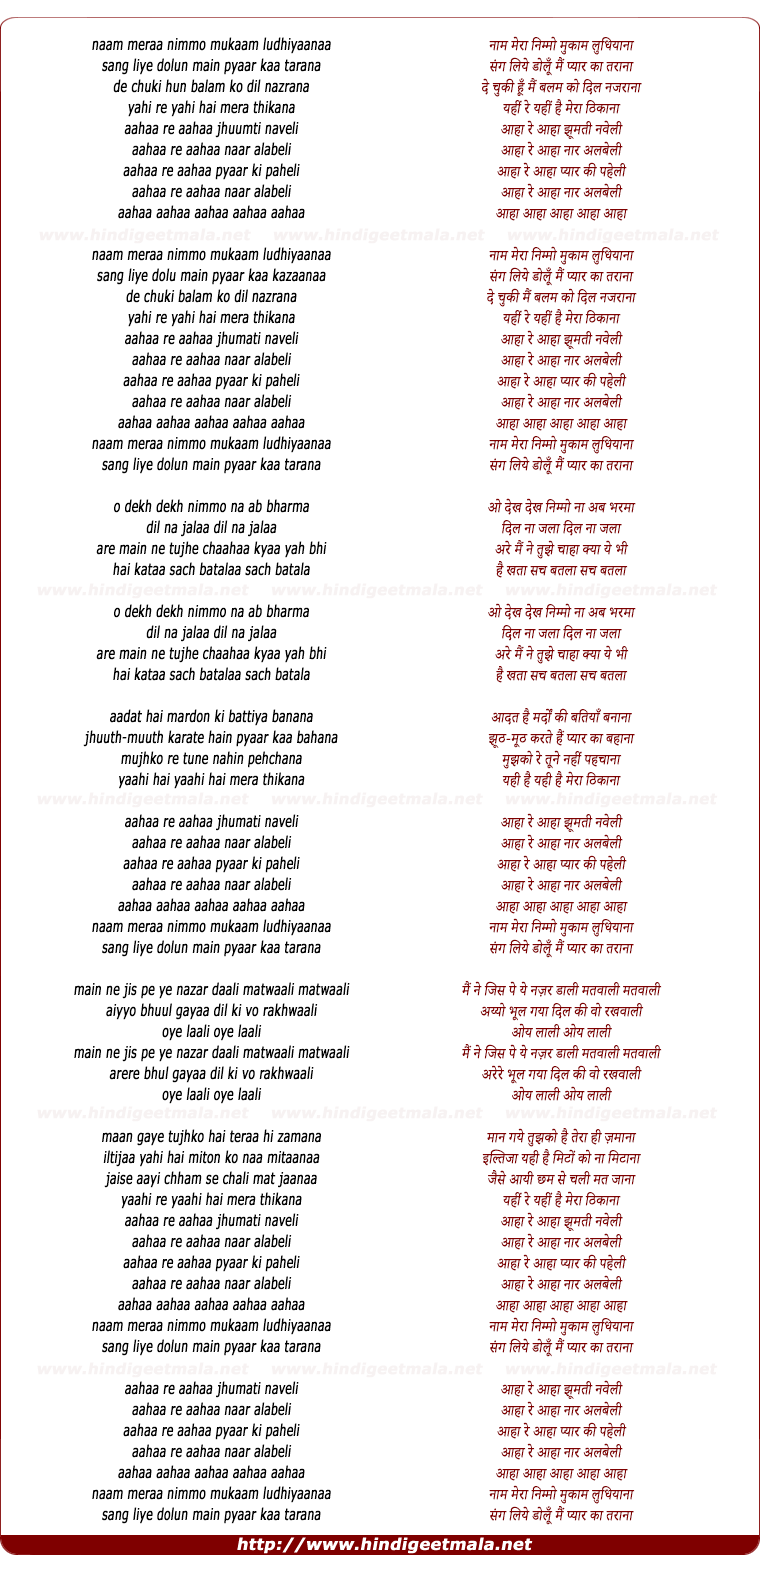 lyrics of song Naam Mera Nimmo Mukam Ludhiana